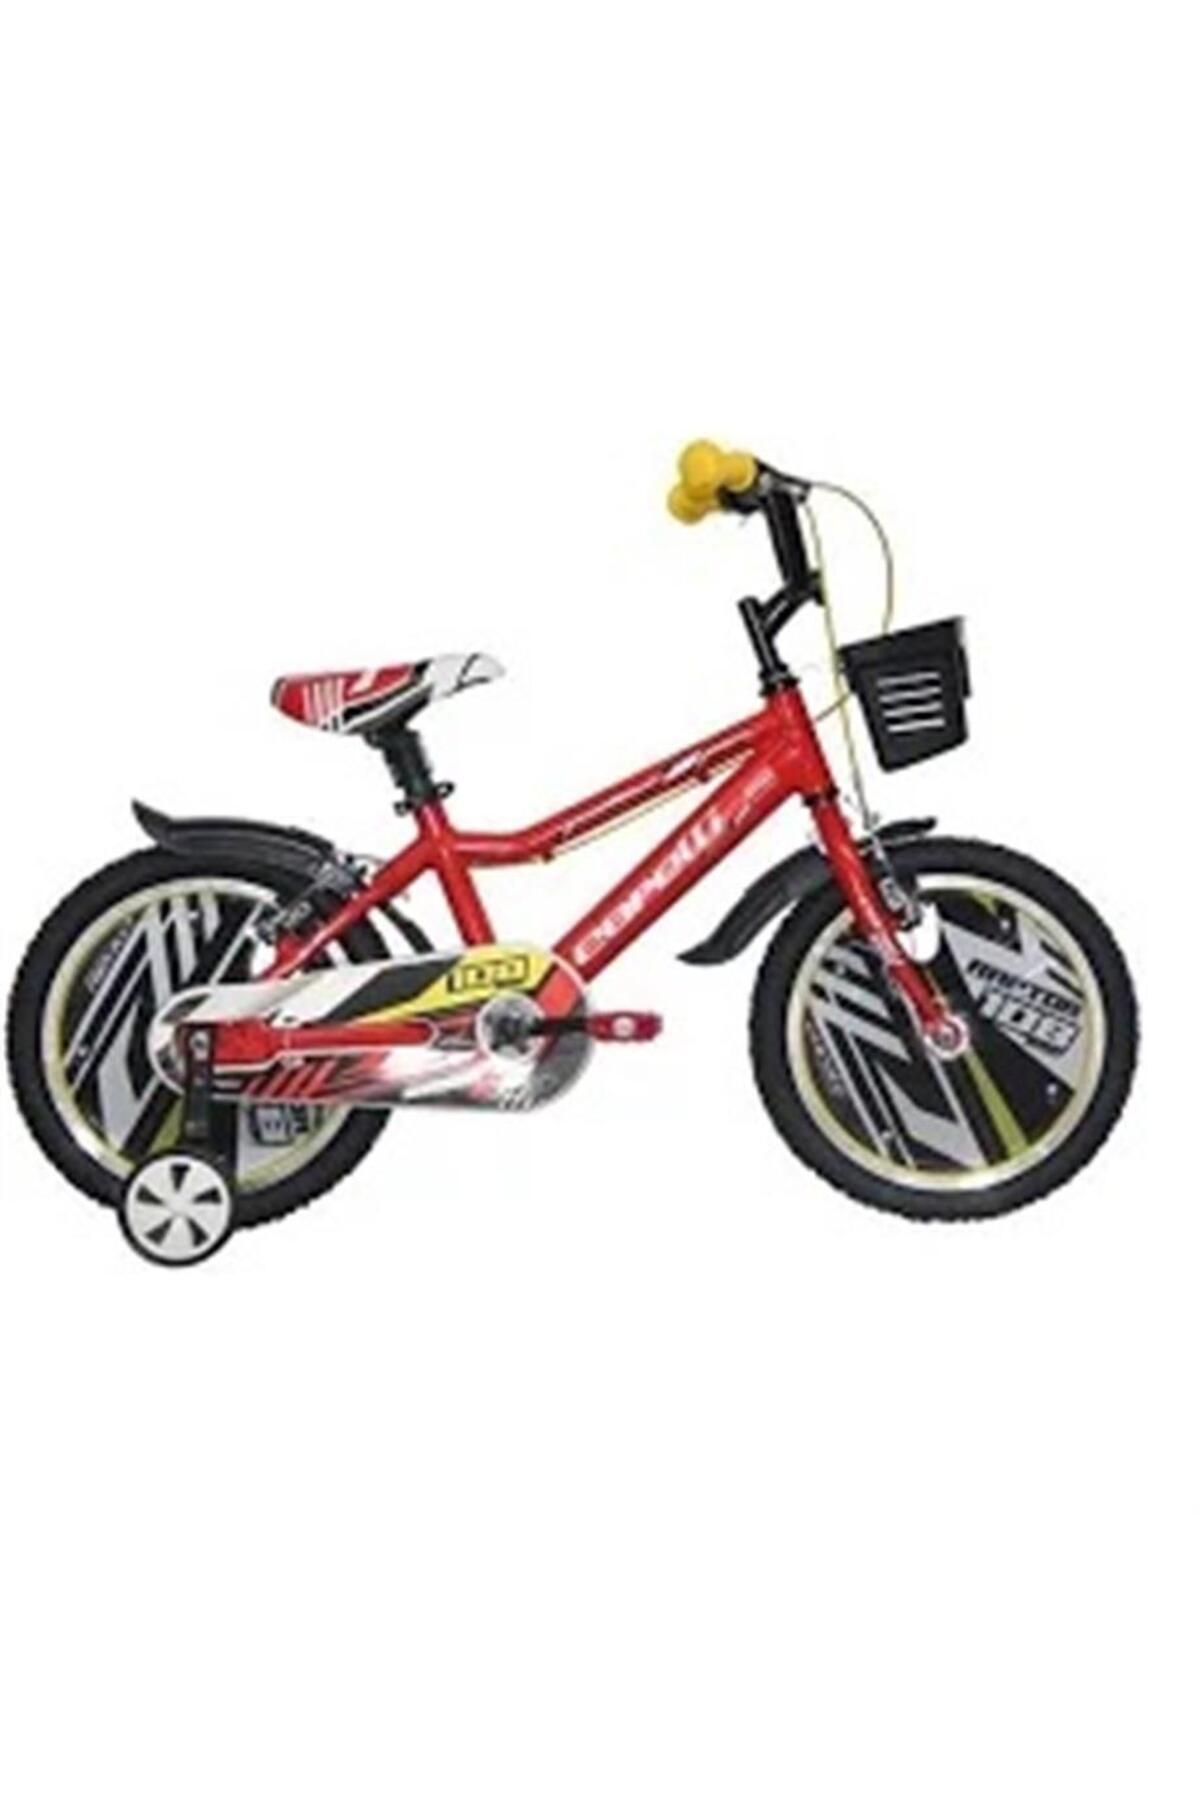 Corelli Raptor Erkek Çocuk Bisikleti V 16 Jant Kırmızı Siyah Beyaz